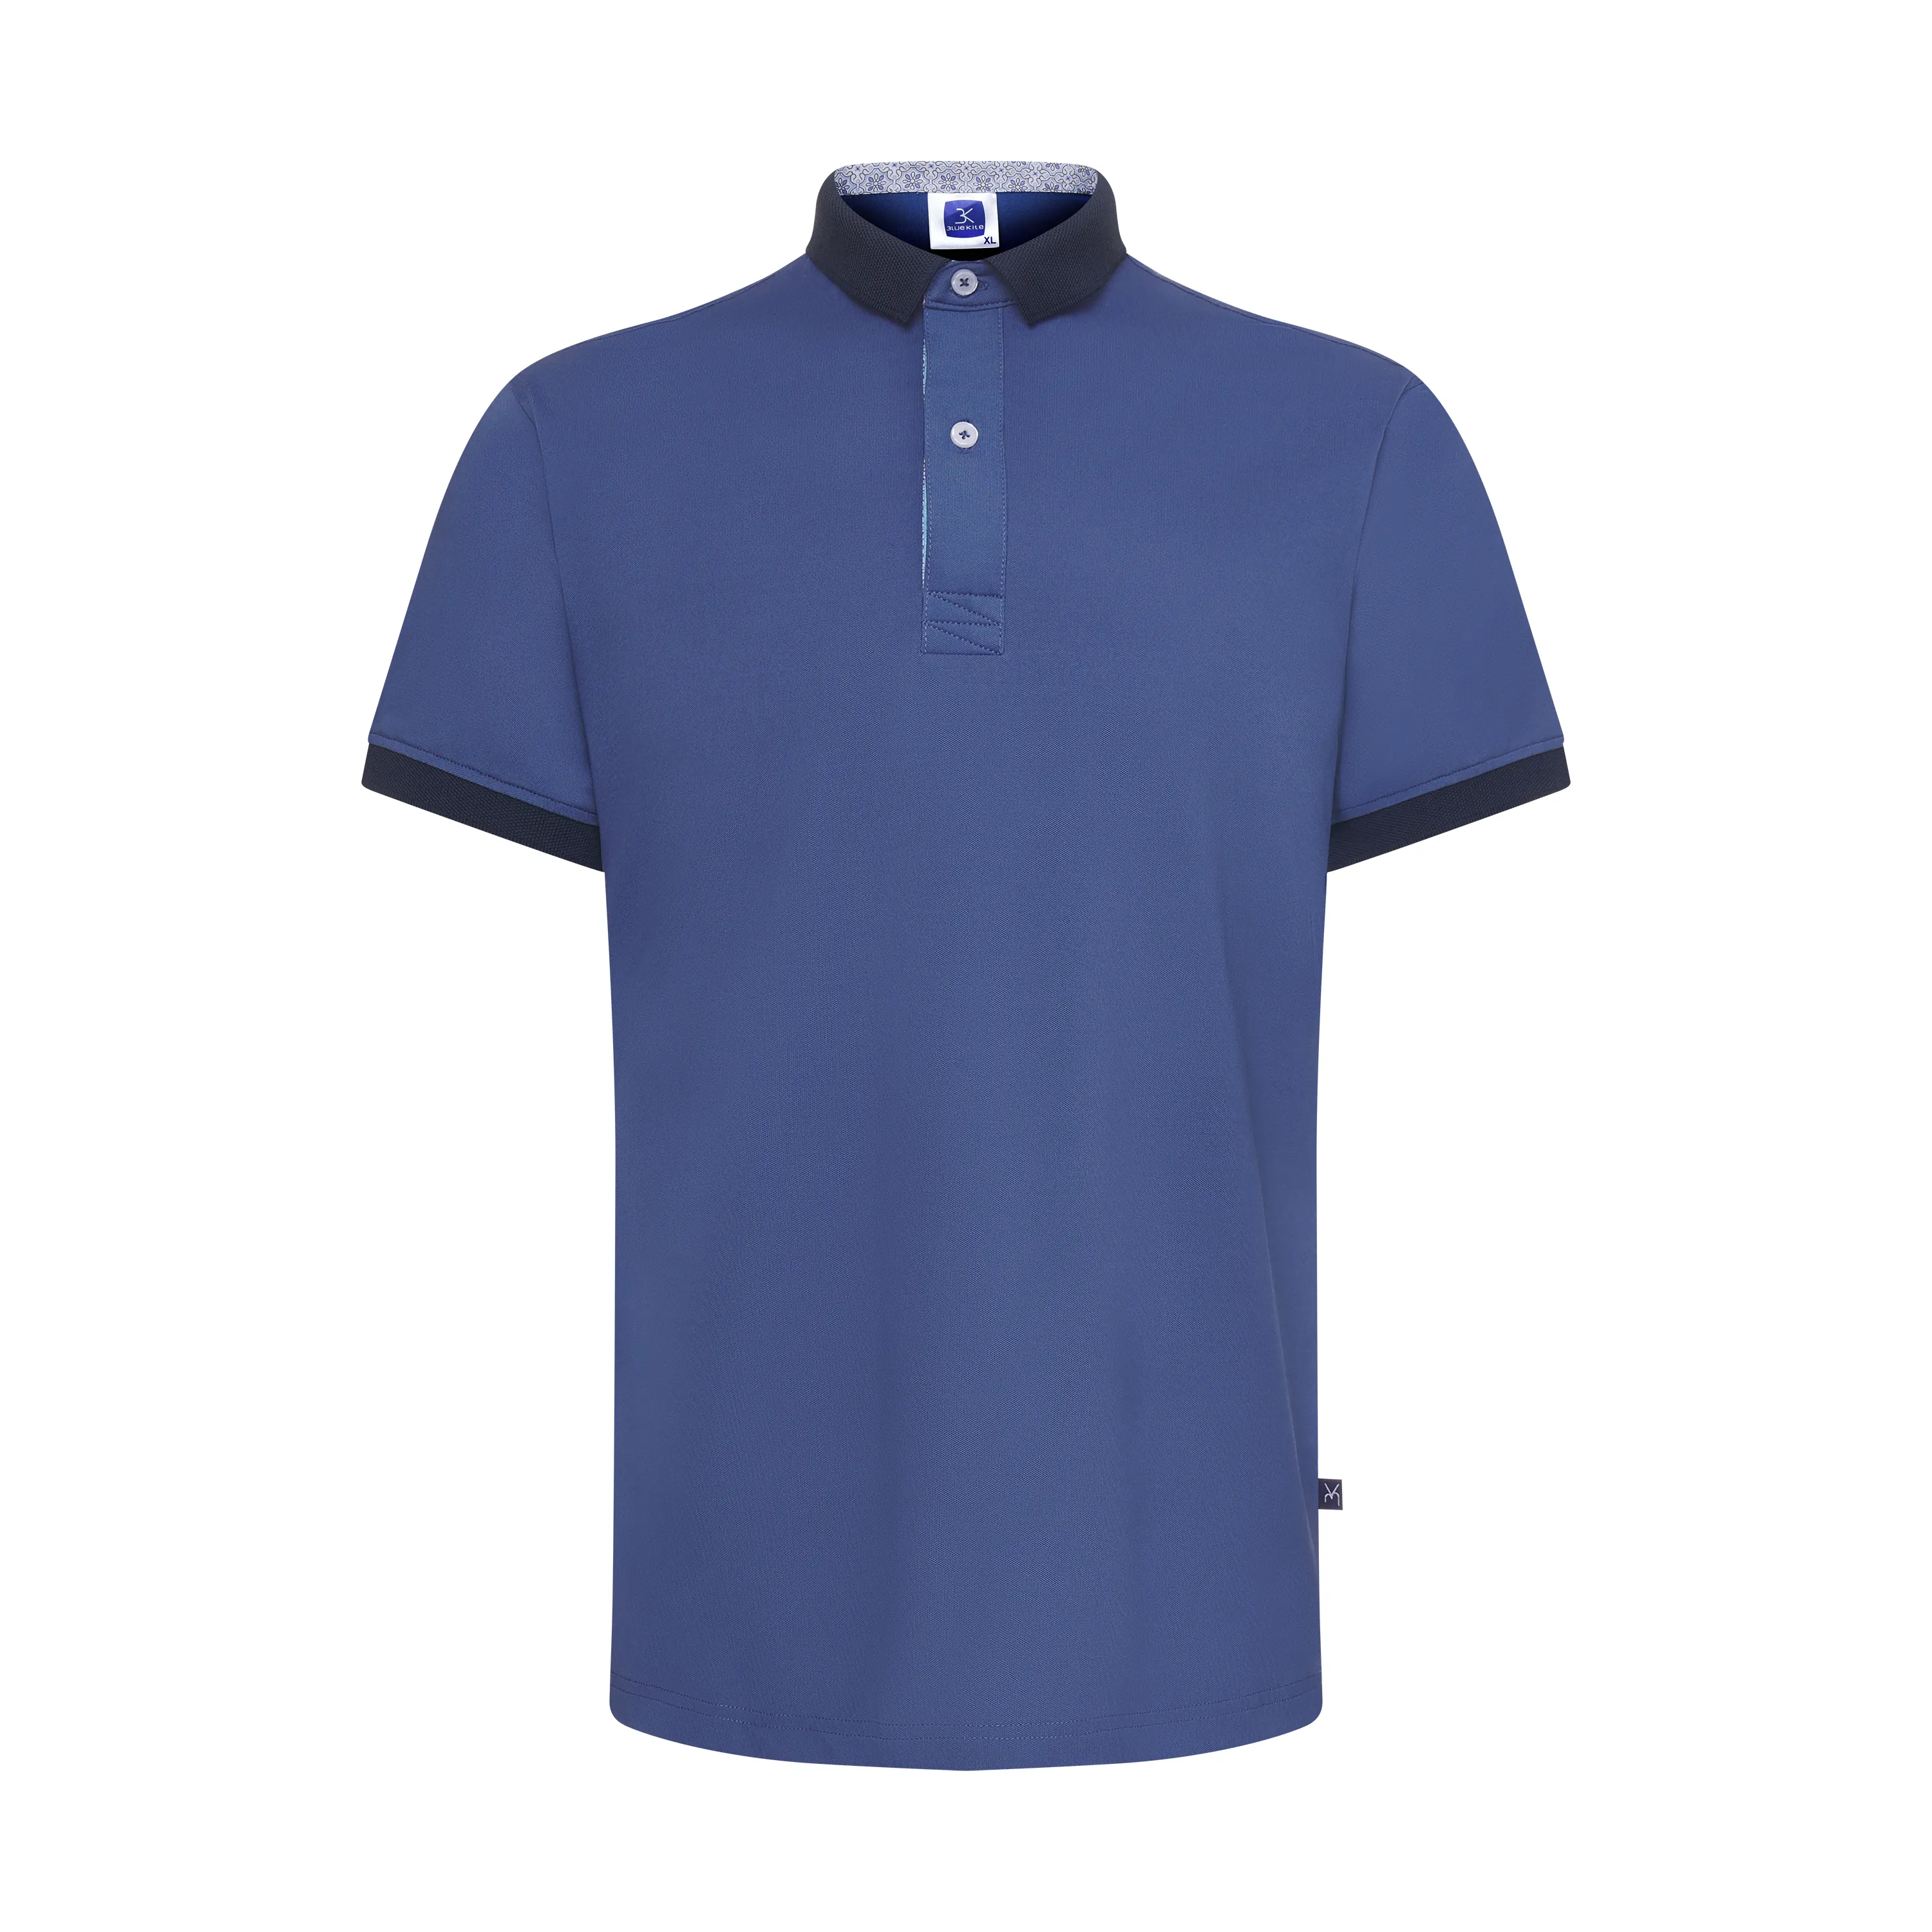 남성용 의류 좋은 가격 보안 유니폼 폴로 셔츠 베트남 제조업체의 폴리 에스터 탄 햄 기아 프리미엄 폴로 셔츠